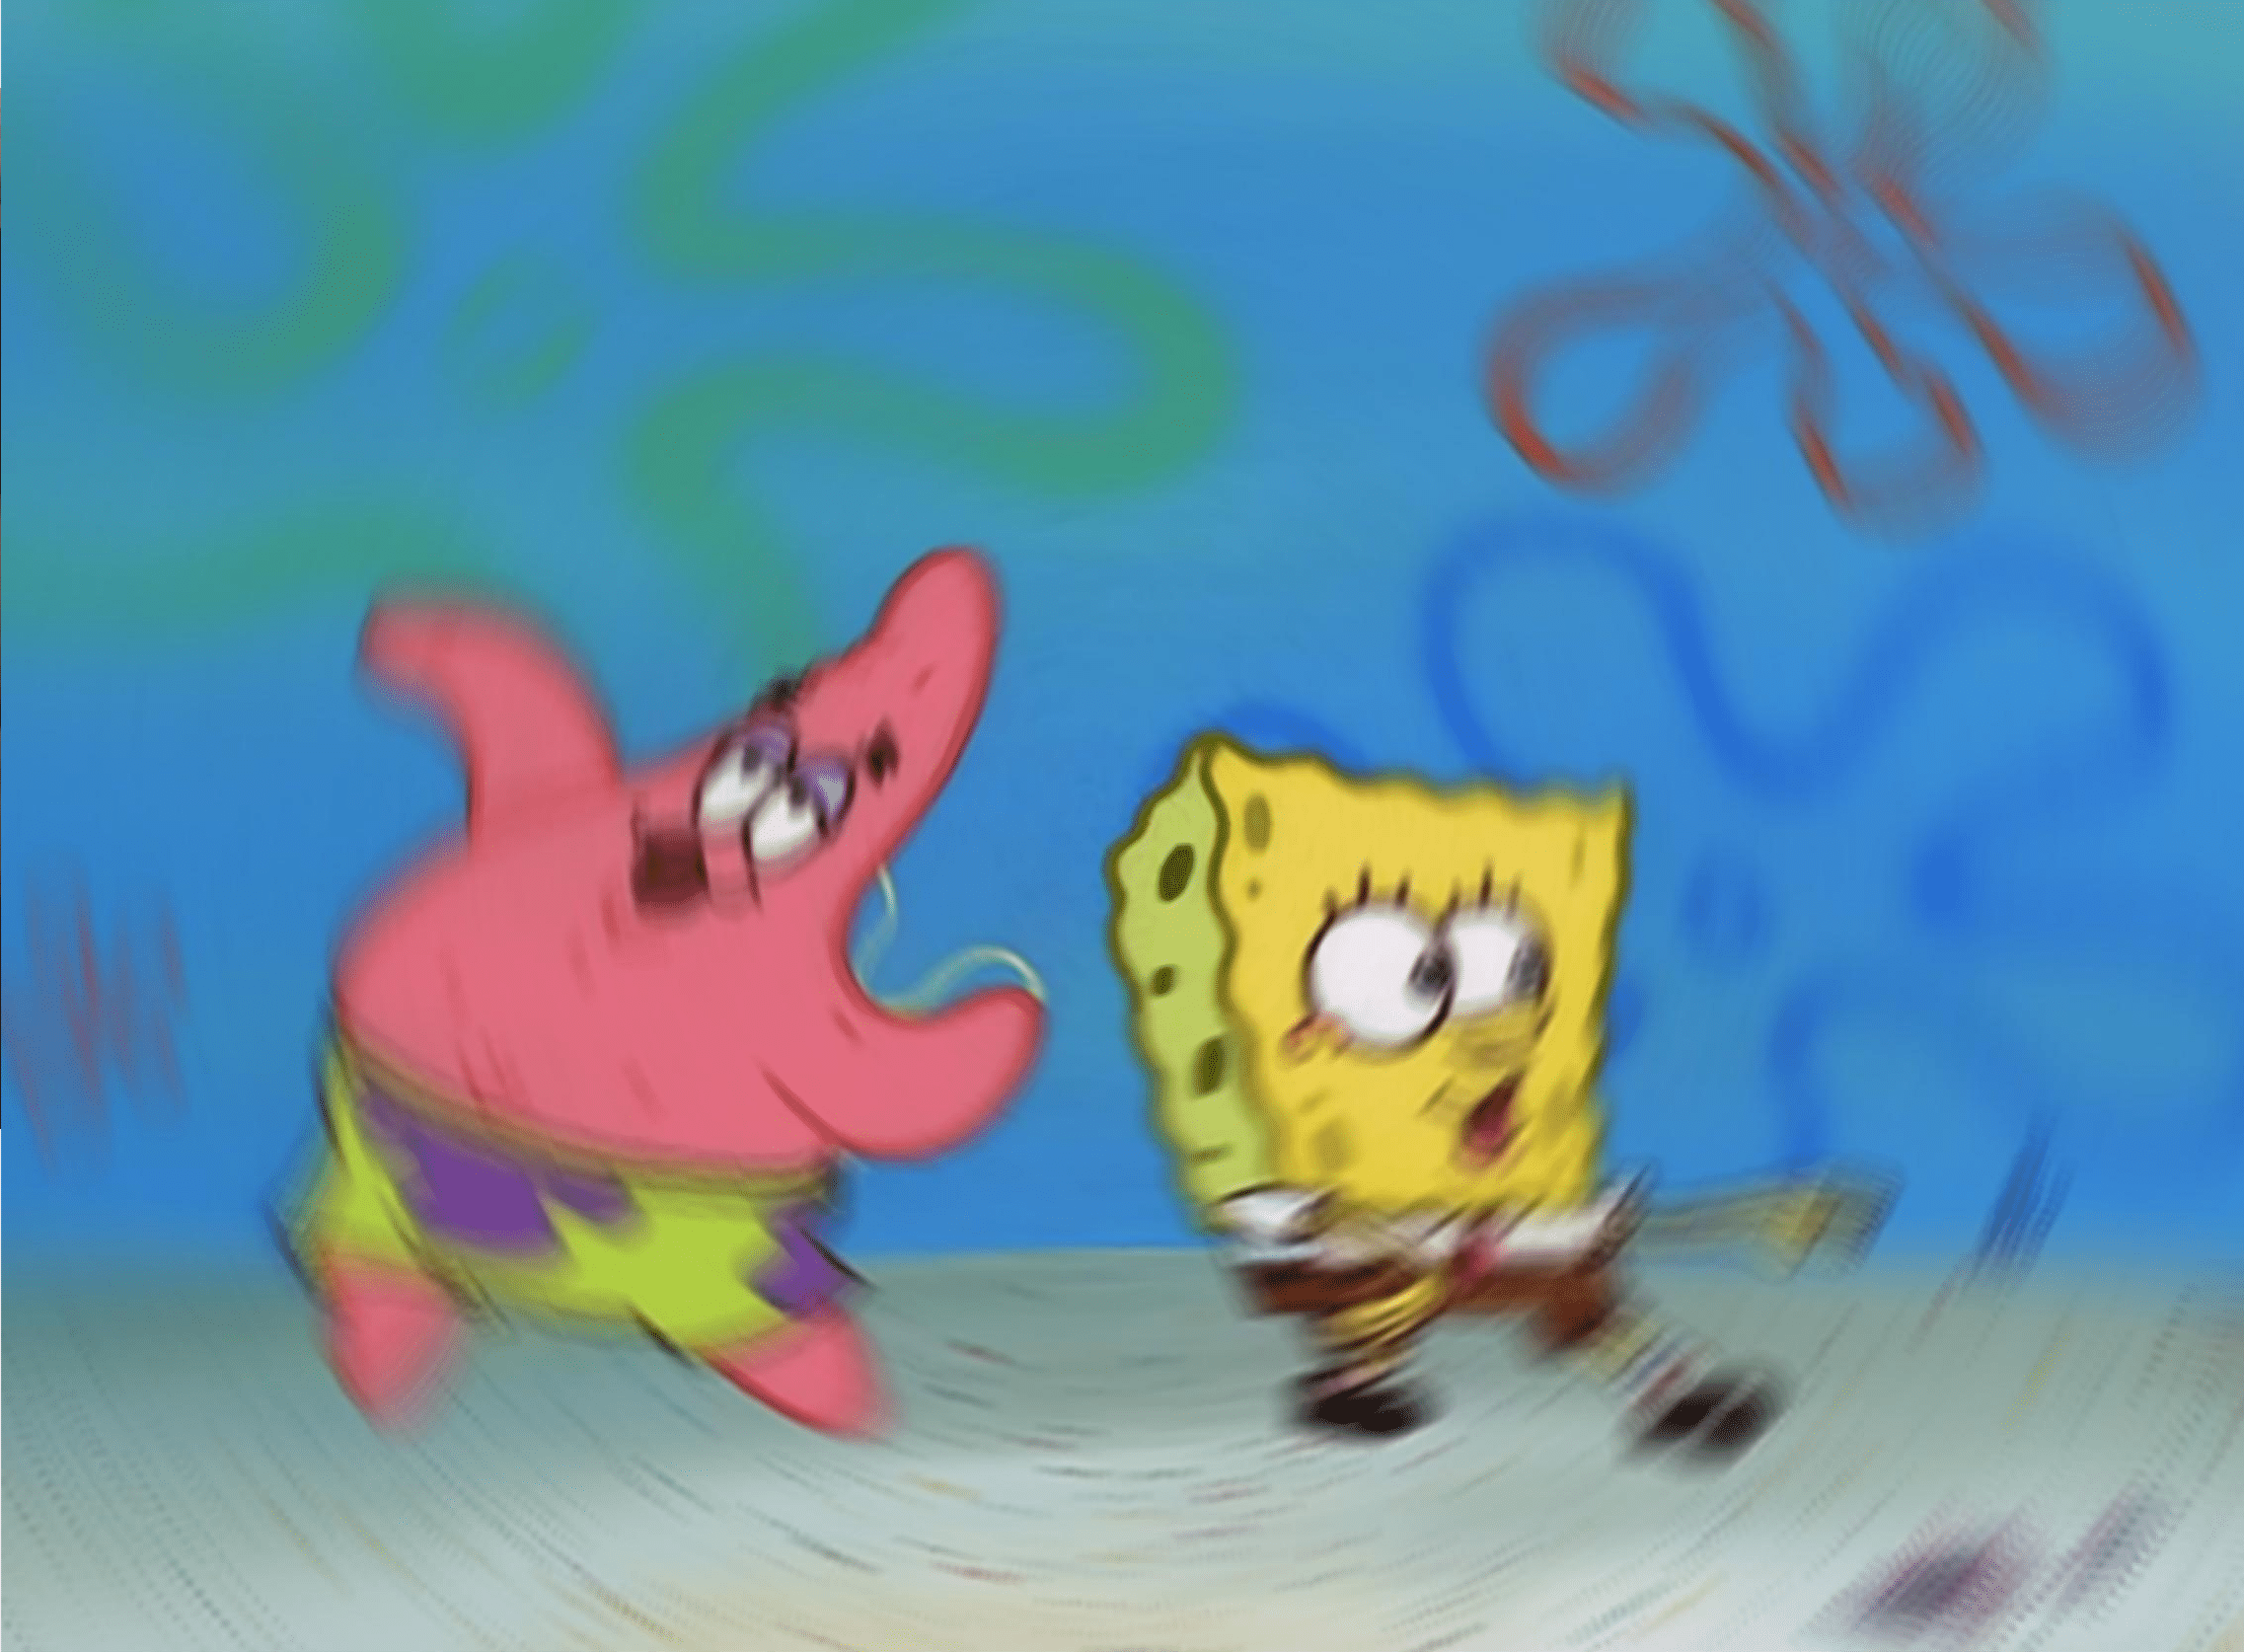 Meme Generator - Patrick and Spongebob Dancing - Newfa Stuff